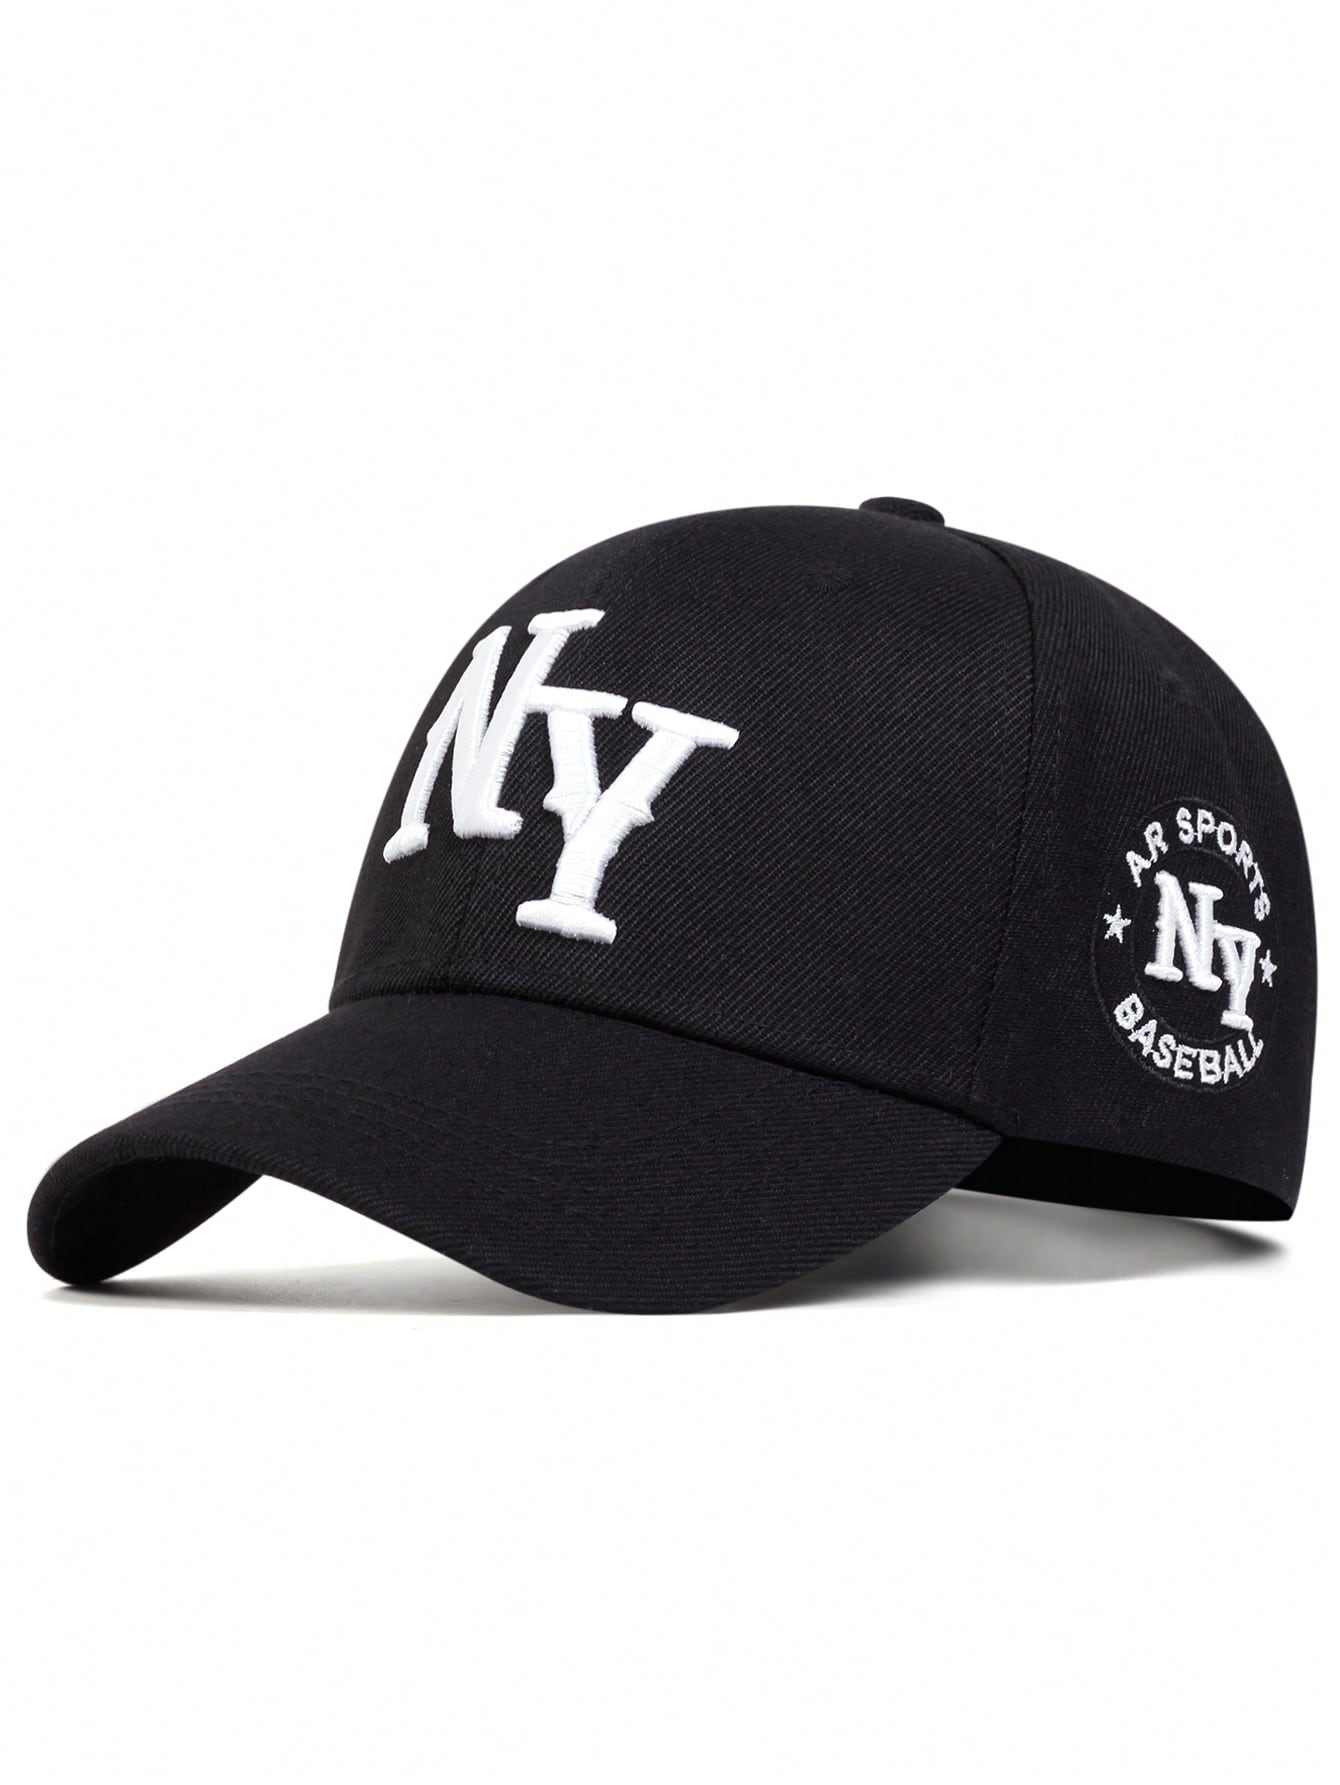 1 шт. мужская бейсболка с вышивкой букв «Нью-Йорк», черный бейсболка унисекс хлопковая регулируемая с цветочной вышивкой